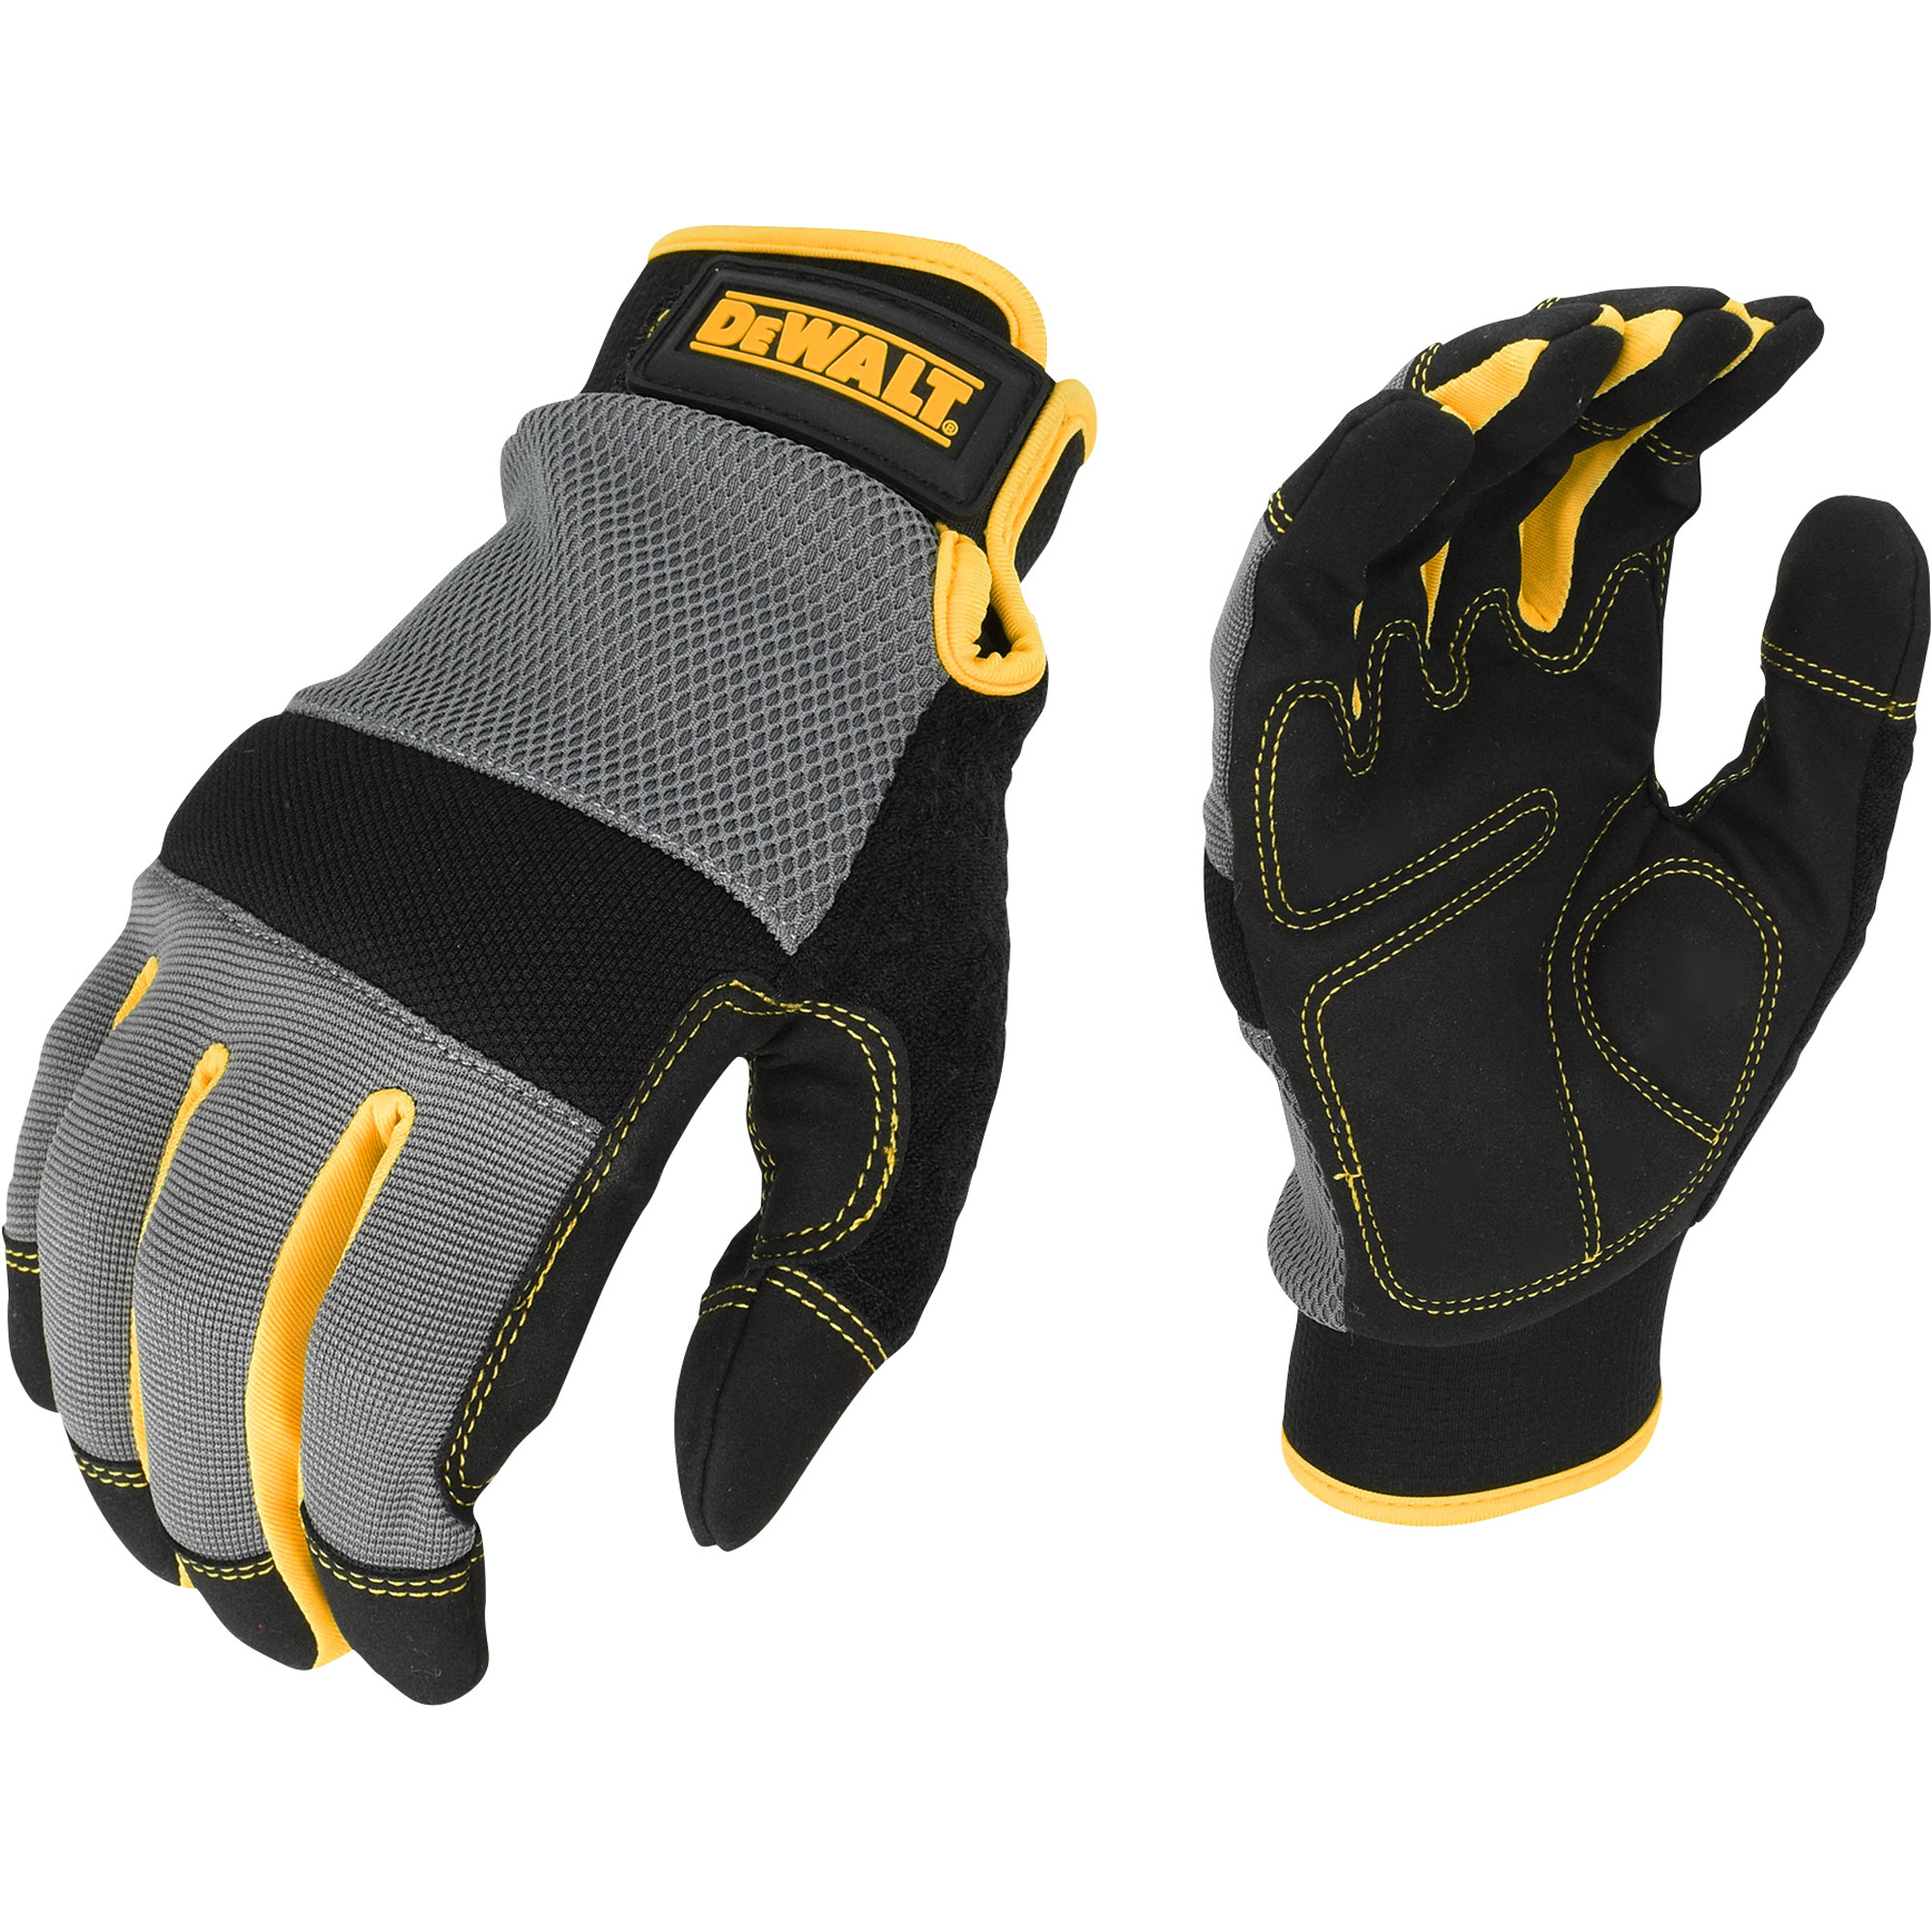 DEWALT Men's Foam Padded Performance Mechanic's Gloves â Gray/Black/Yellow, XL, Model DPG211XL